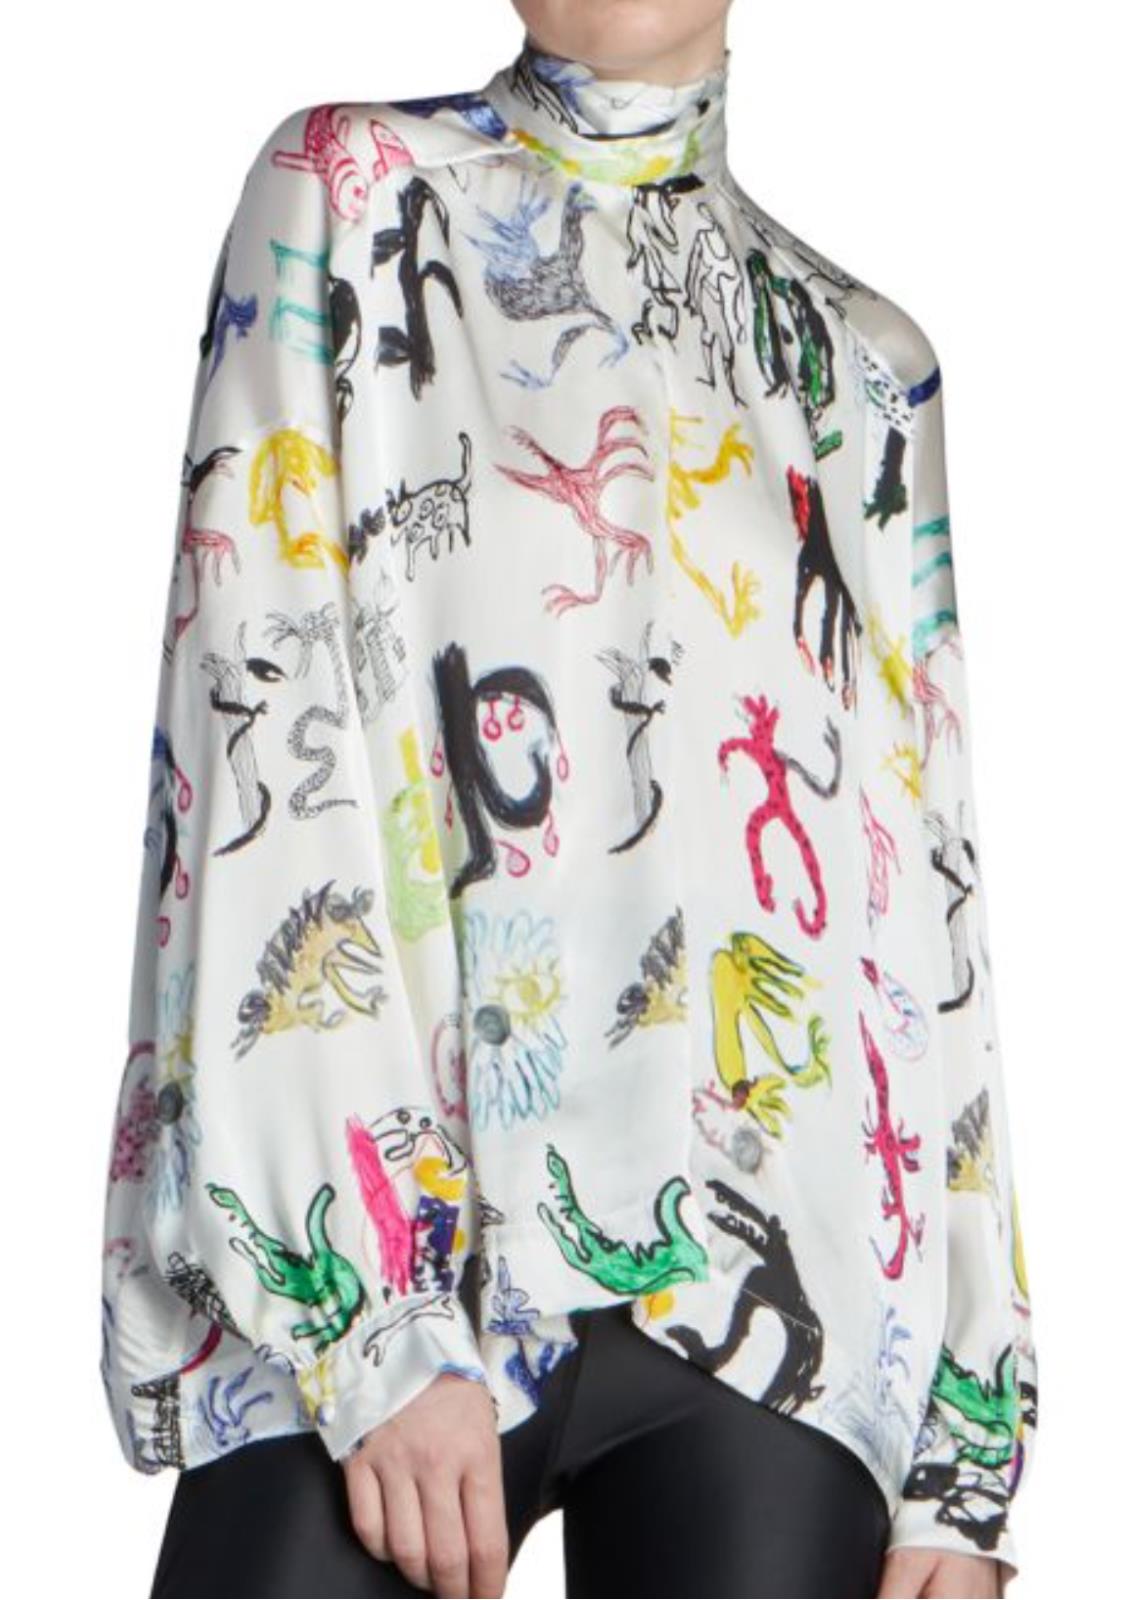 СЗТ 1590 долларов США Balenciaga Женская блузка Artist Doodle Graphic 4 США (36 евро) Италия